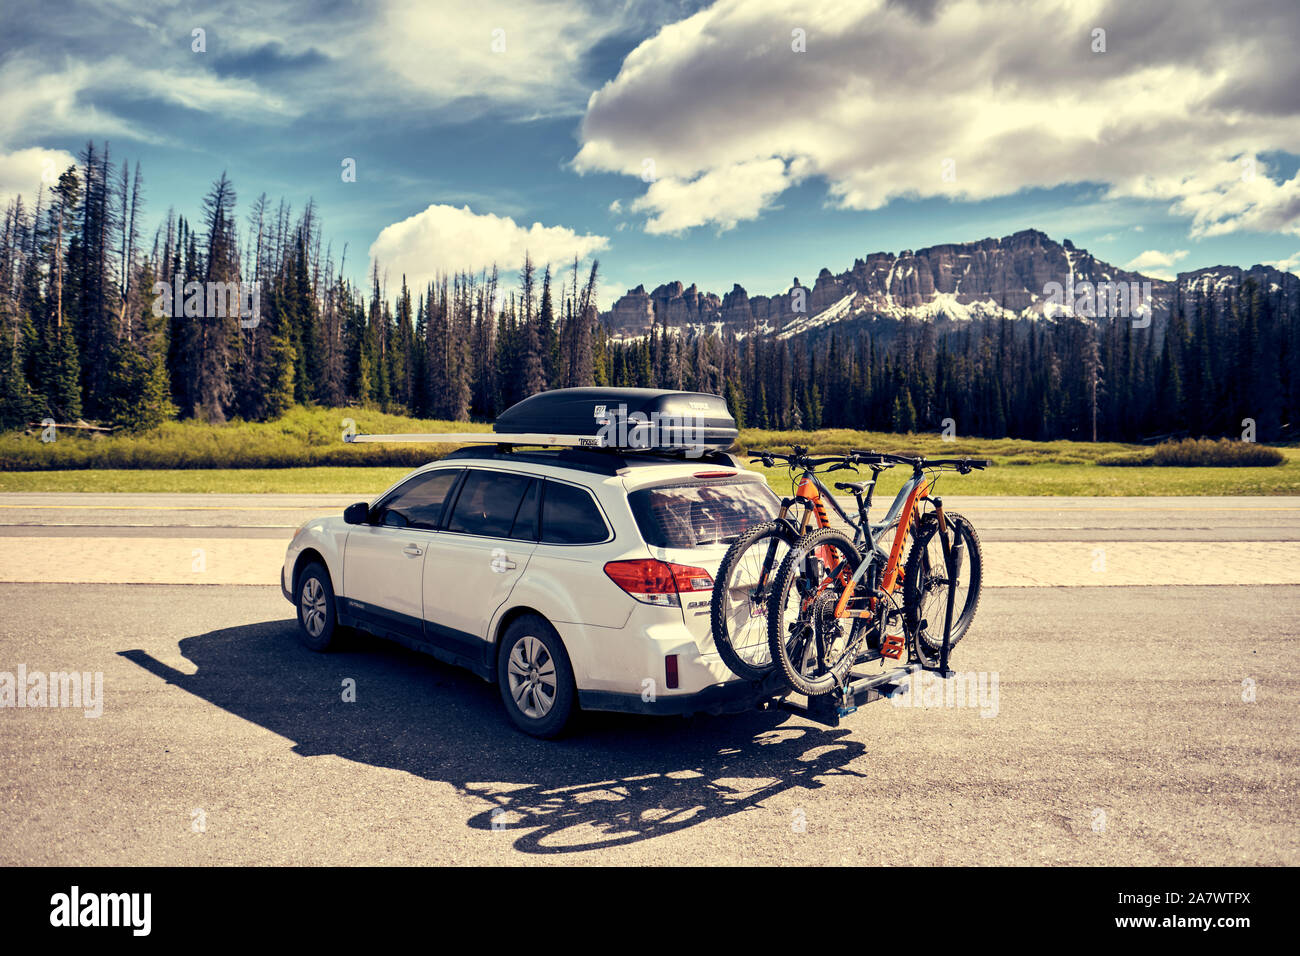 Subaru Outback aventura móvil, cargado con bicicletas de montaña. Foto de stock